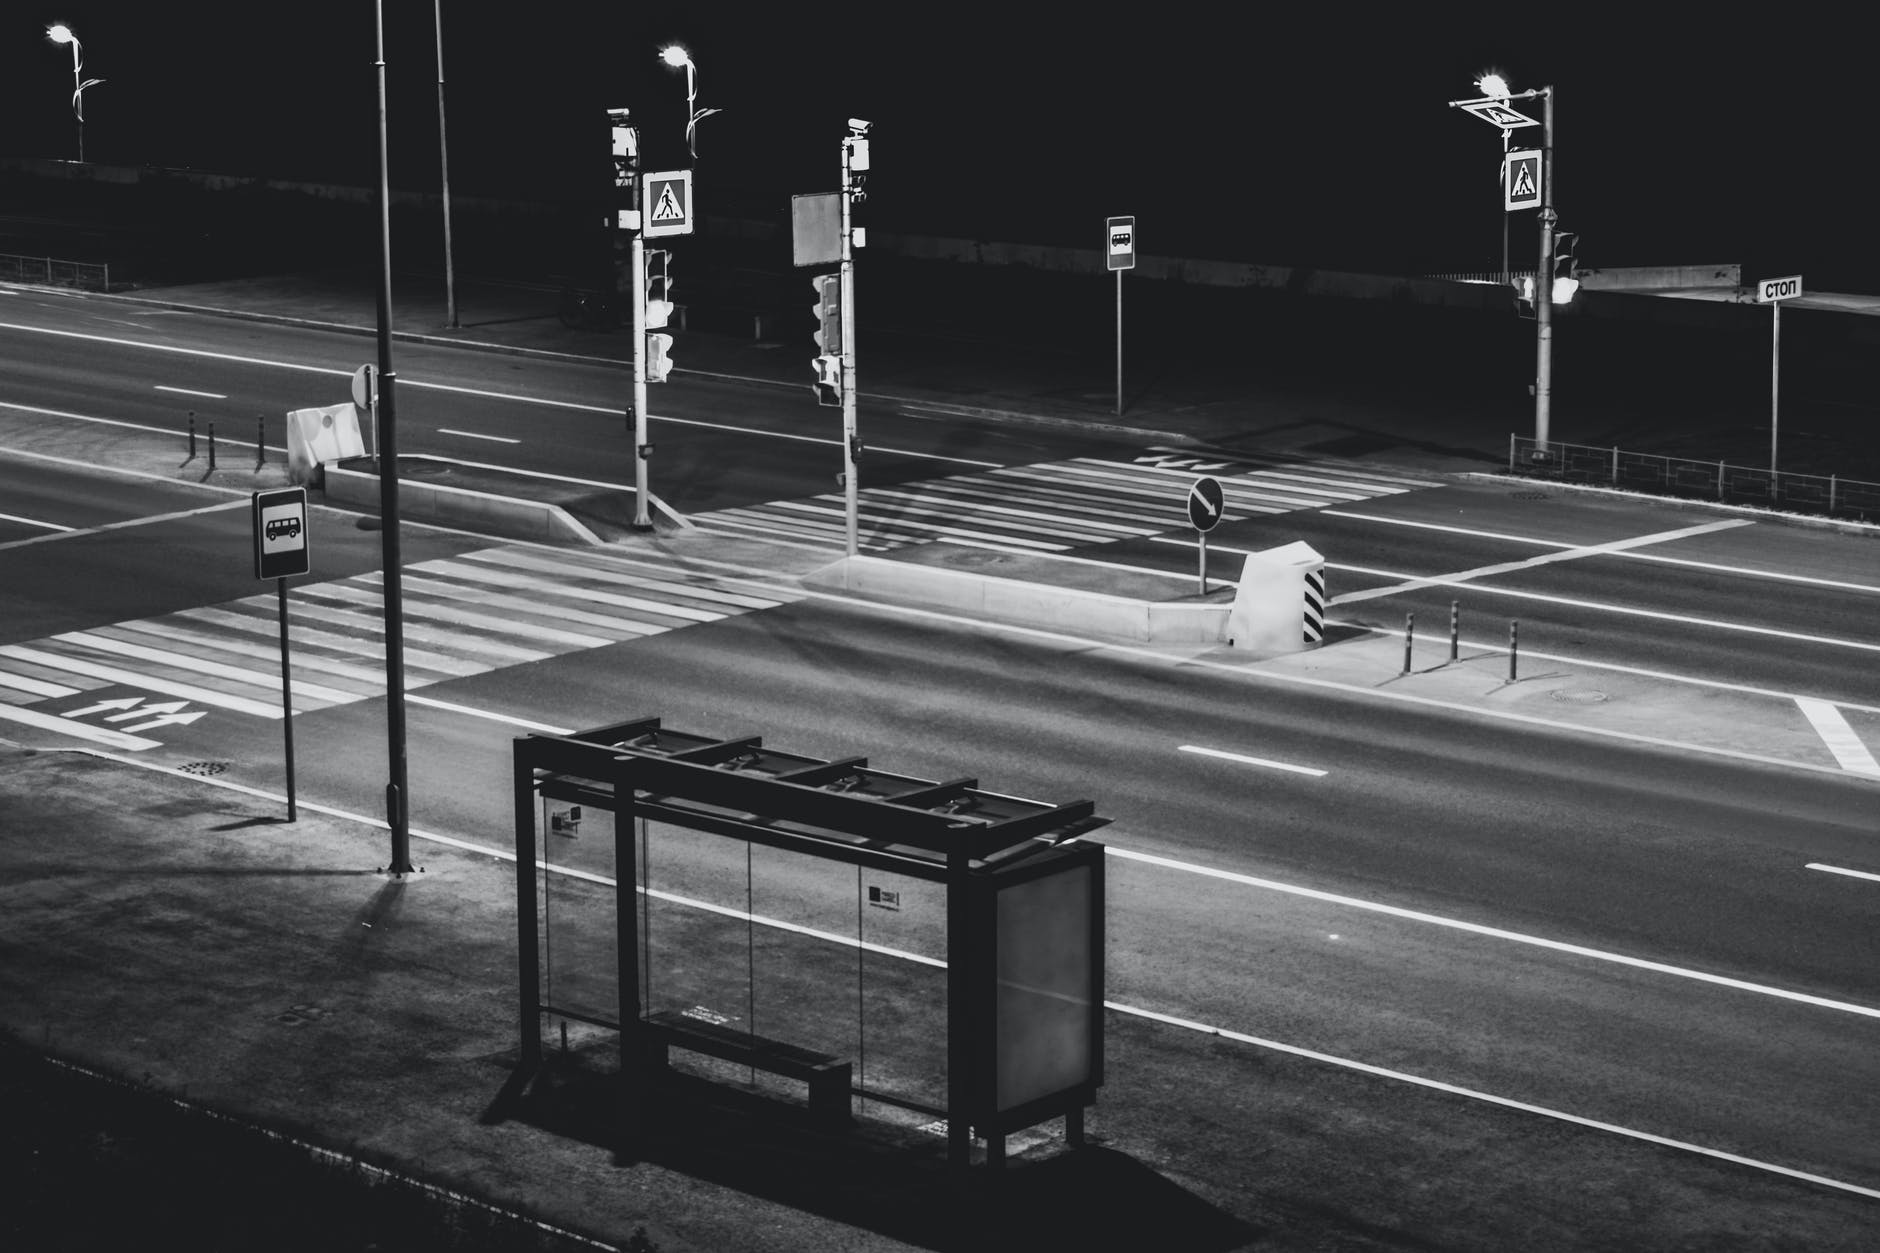 Parada de autobús por la noche. | Foto: Pexels